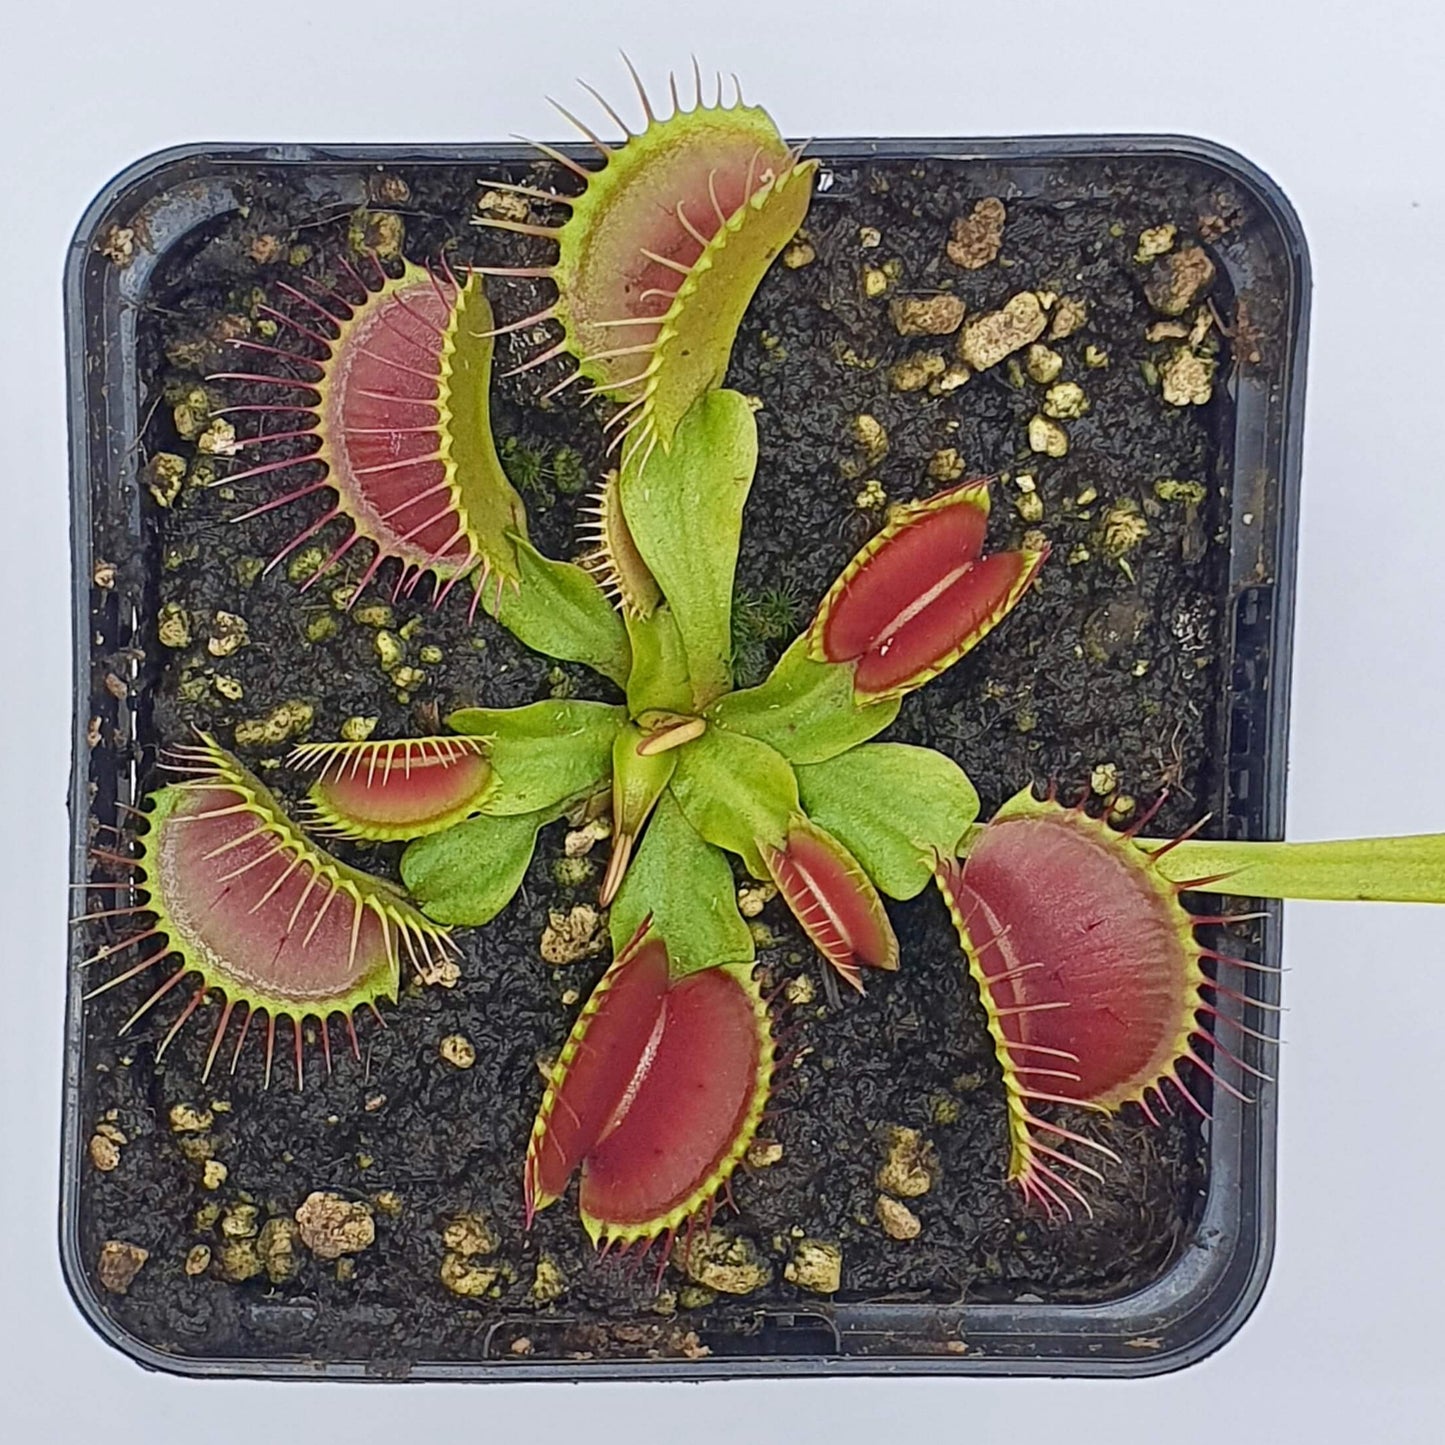 Dionaea muscipula "Eyelashes"